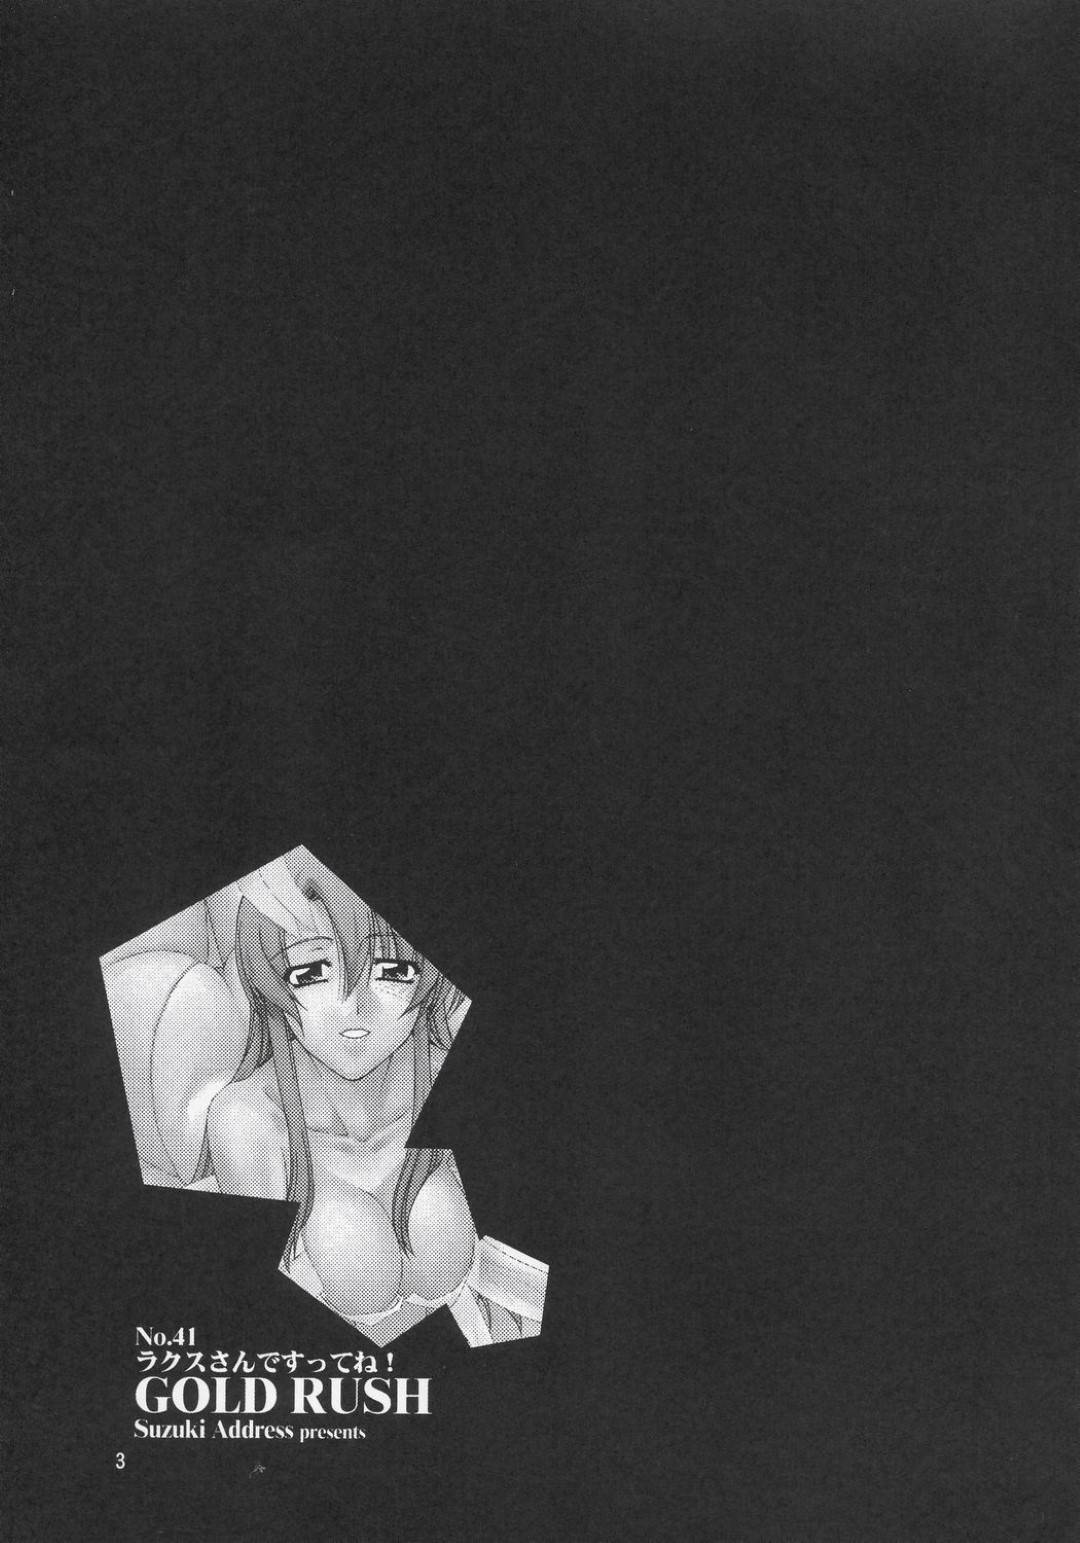 【エロ漫画】キラと二人きりの部屋でエッチな事を求められたラクス。まんざらじゃない彼女は彼に委ねるようにディープキスされ、そのまま正常位でチンポを生挿入されて中出しセックスへと発展。